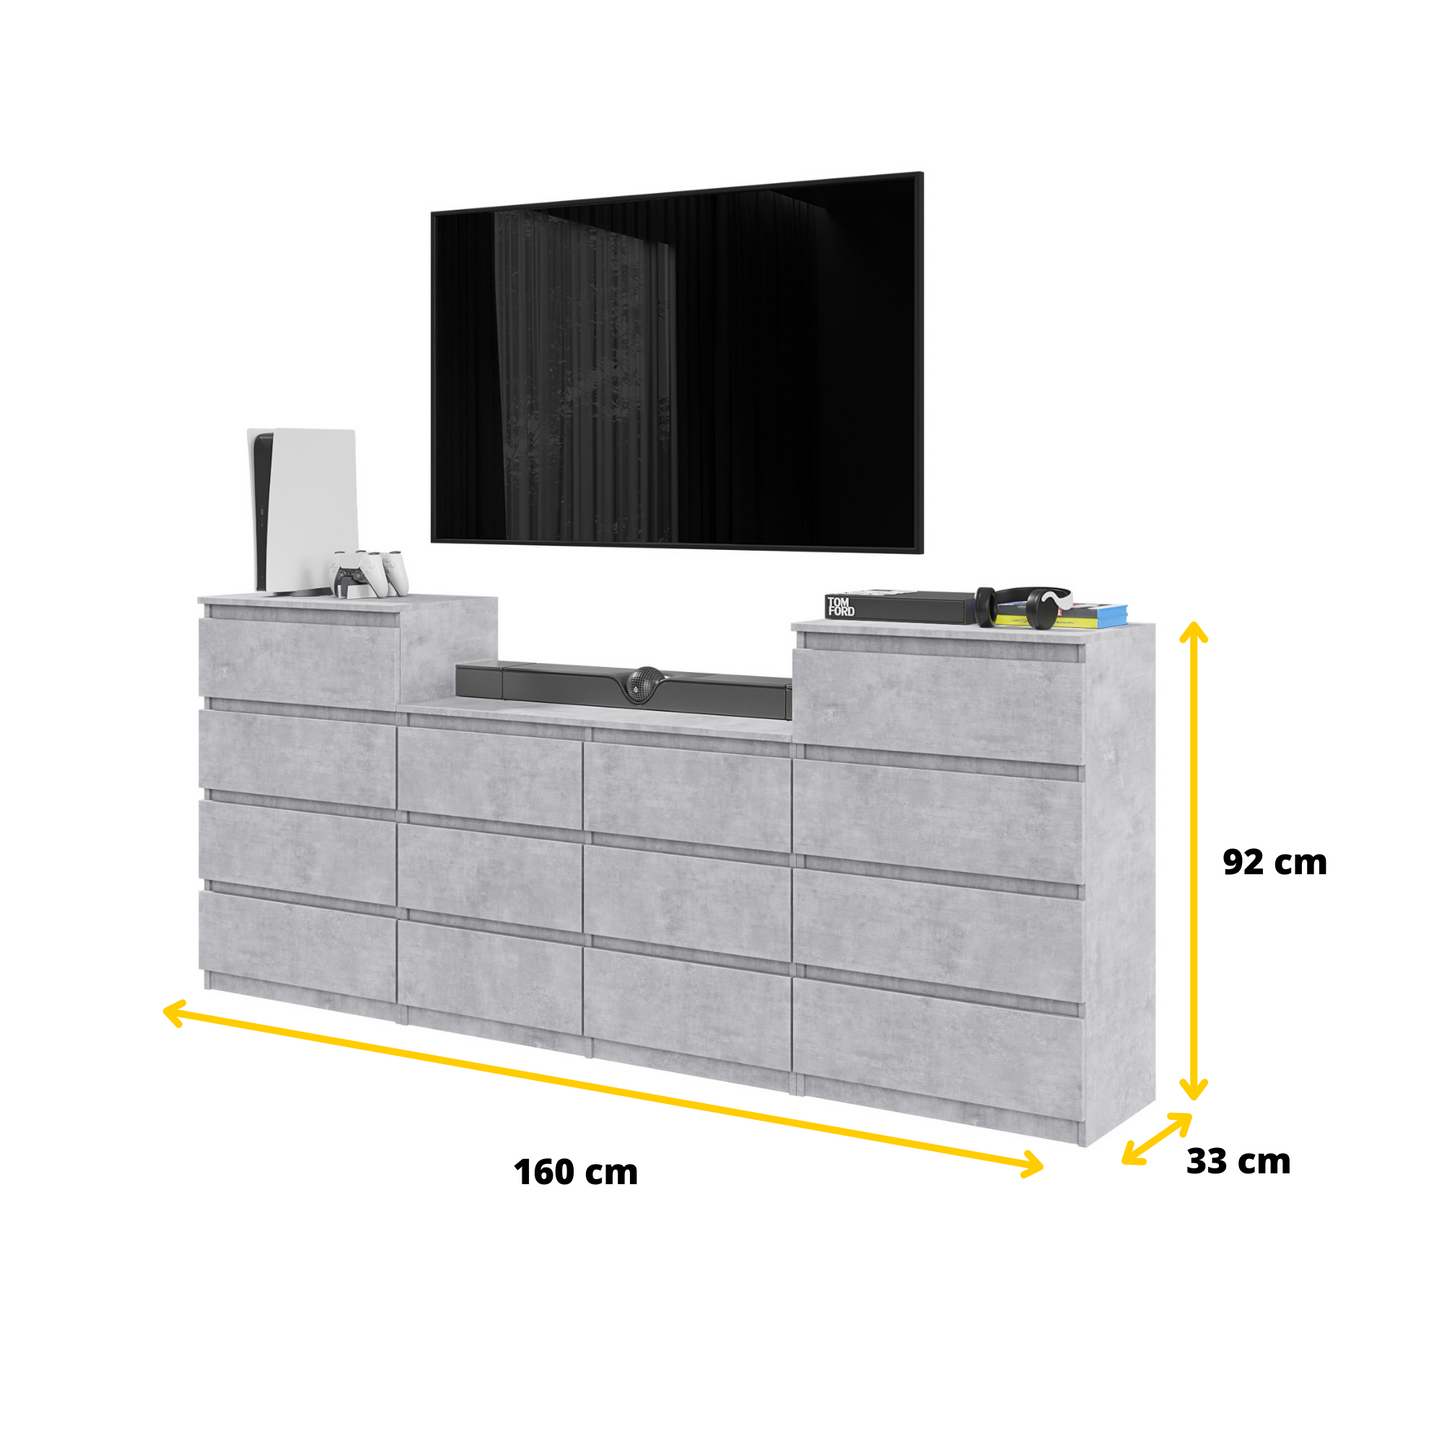 GABRIEL - Kommode / Sideboard mit 14 Schubladen (4+6+4) - Beton-Optik